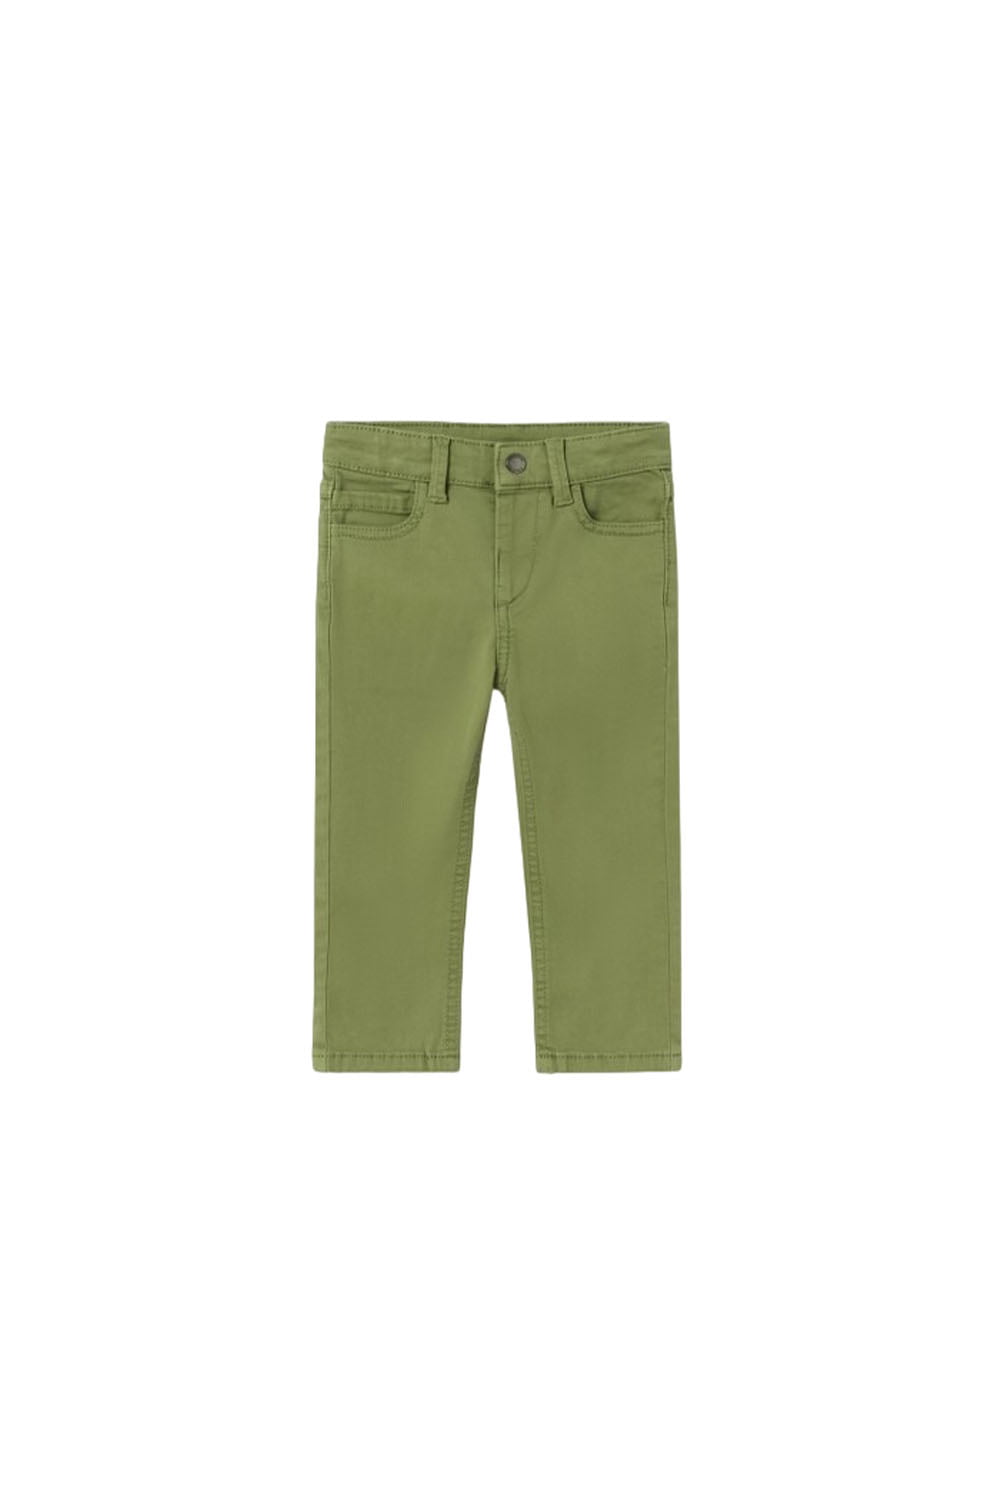 Παιδικό Παντελόνι Για Αγόρι MAYORAL 13-00563-024 Πράσινο